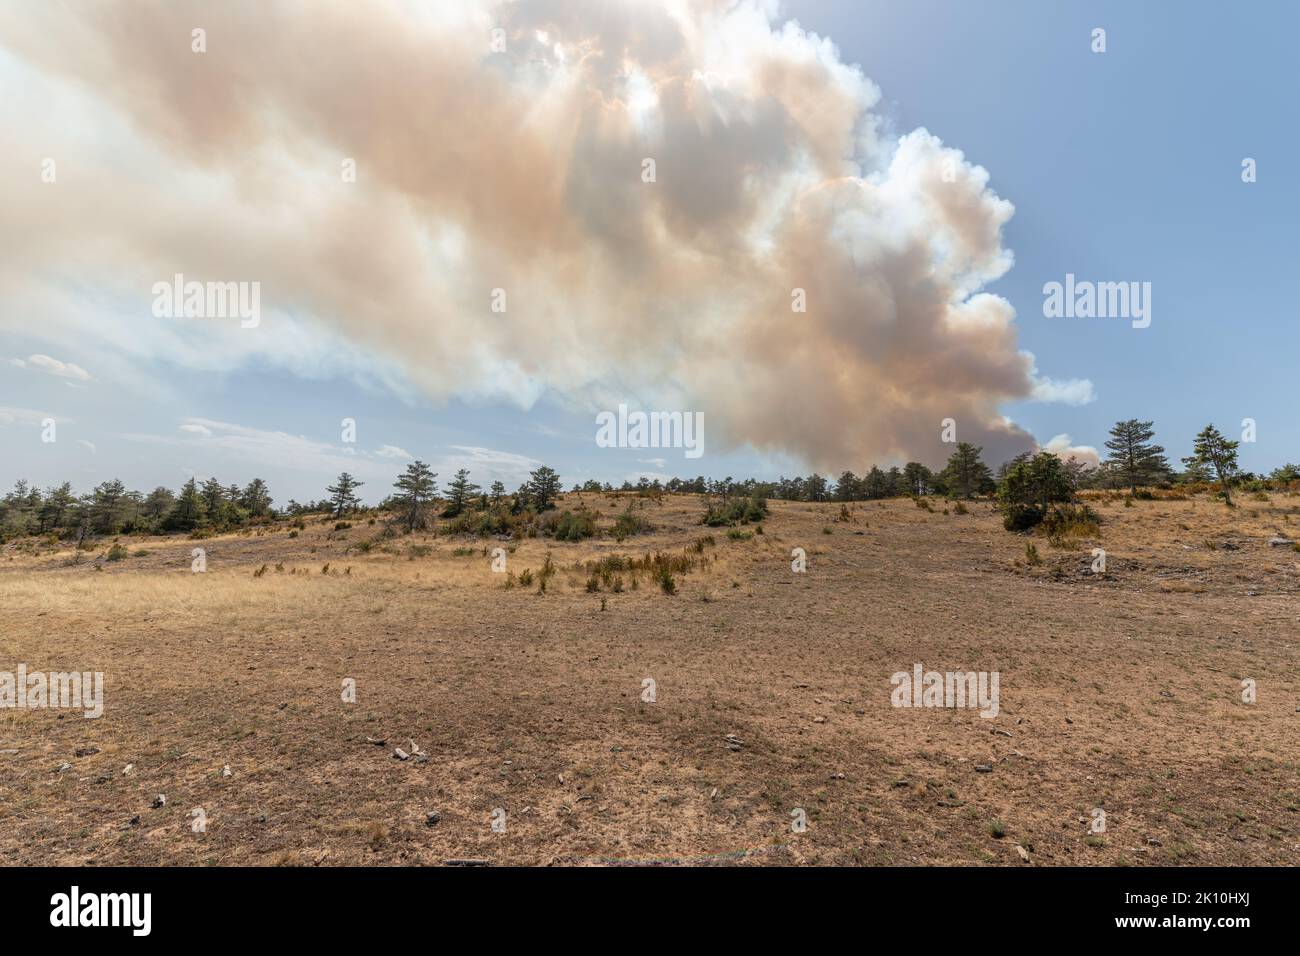 Le feu de forêt fait des ravages sur le causse de sauveterre. Montuejols, Aveyron, Cévennes, France. Banque D'Images